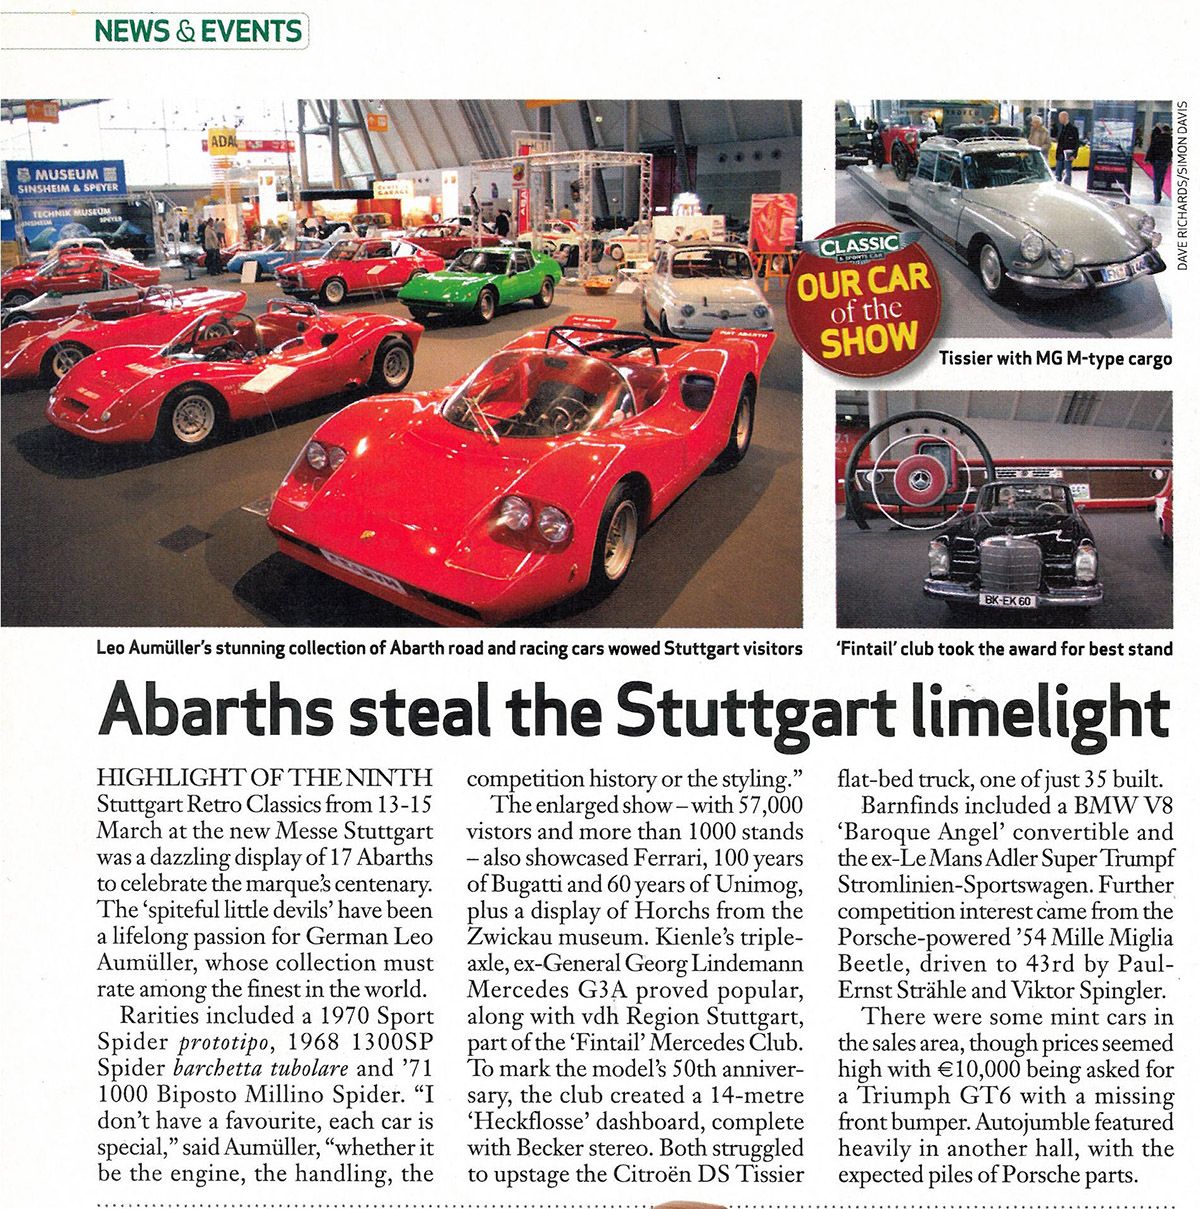 Abarth steal the Stuttgart limelight 3